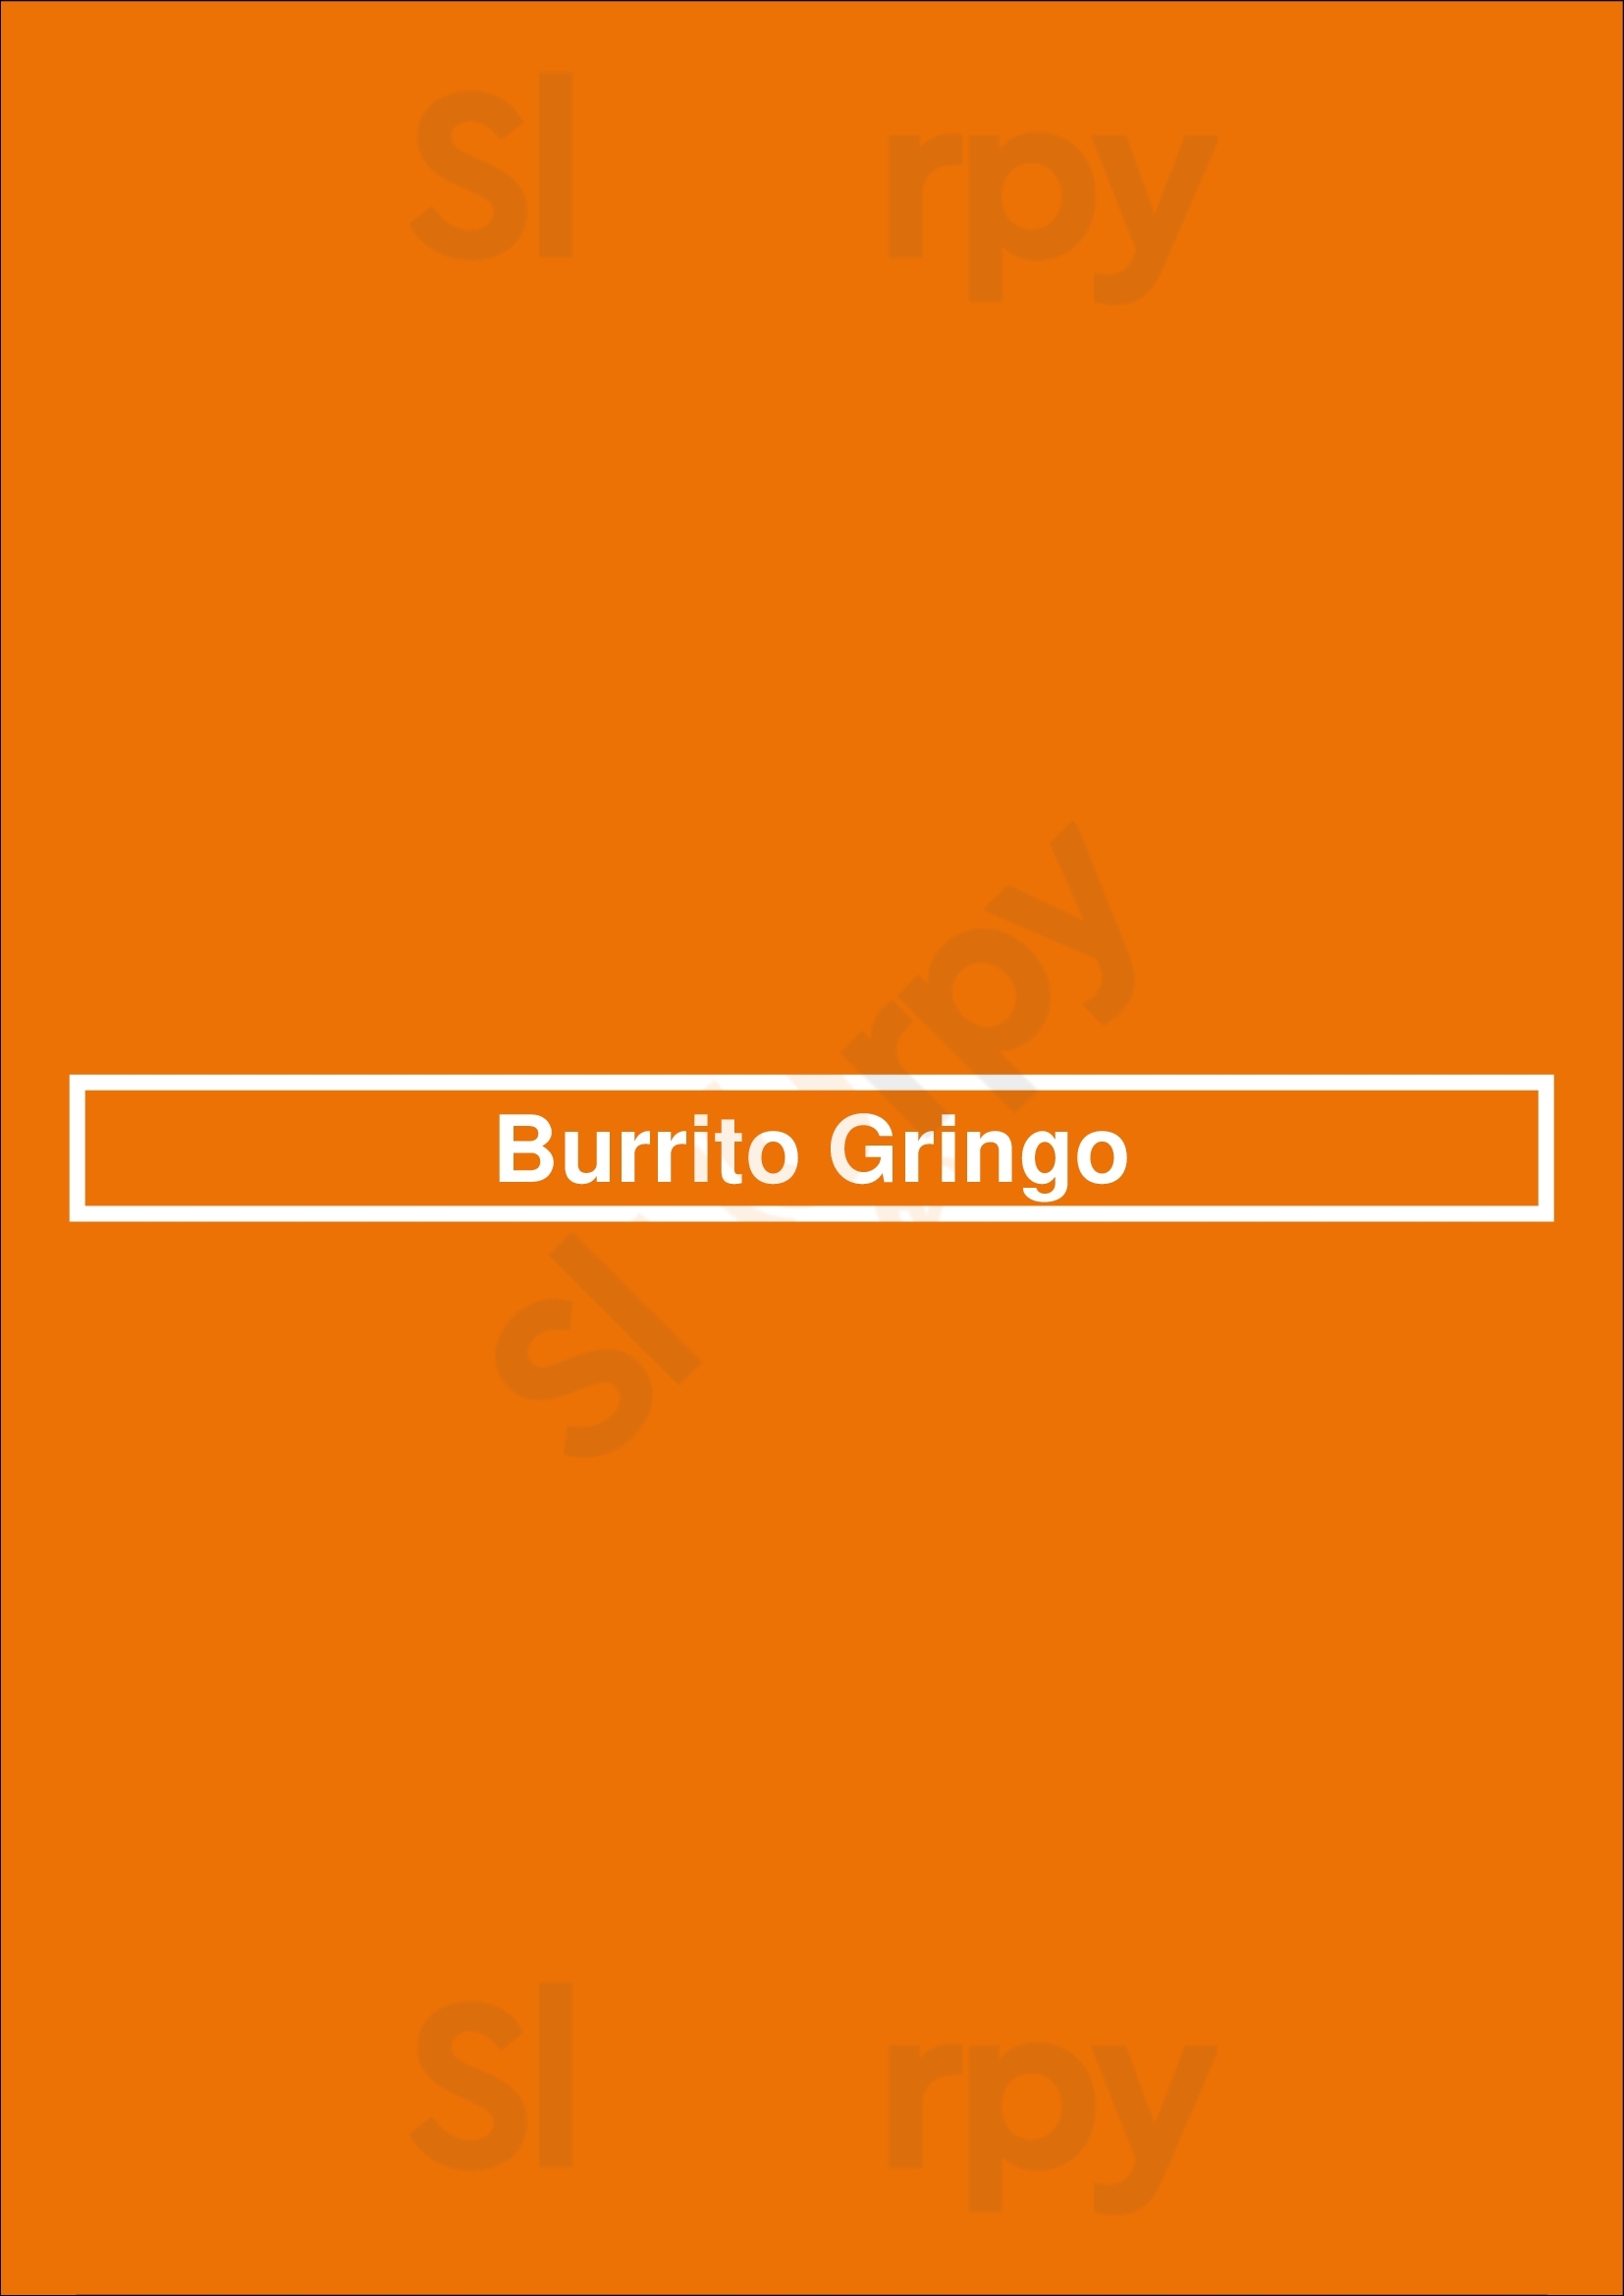 Don Burrito Ottawa Menu - 1